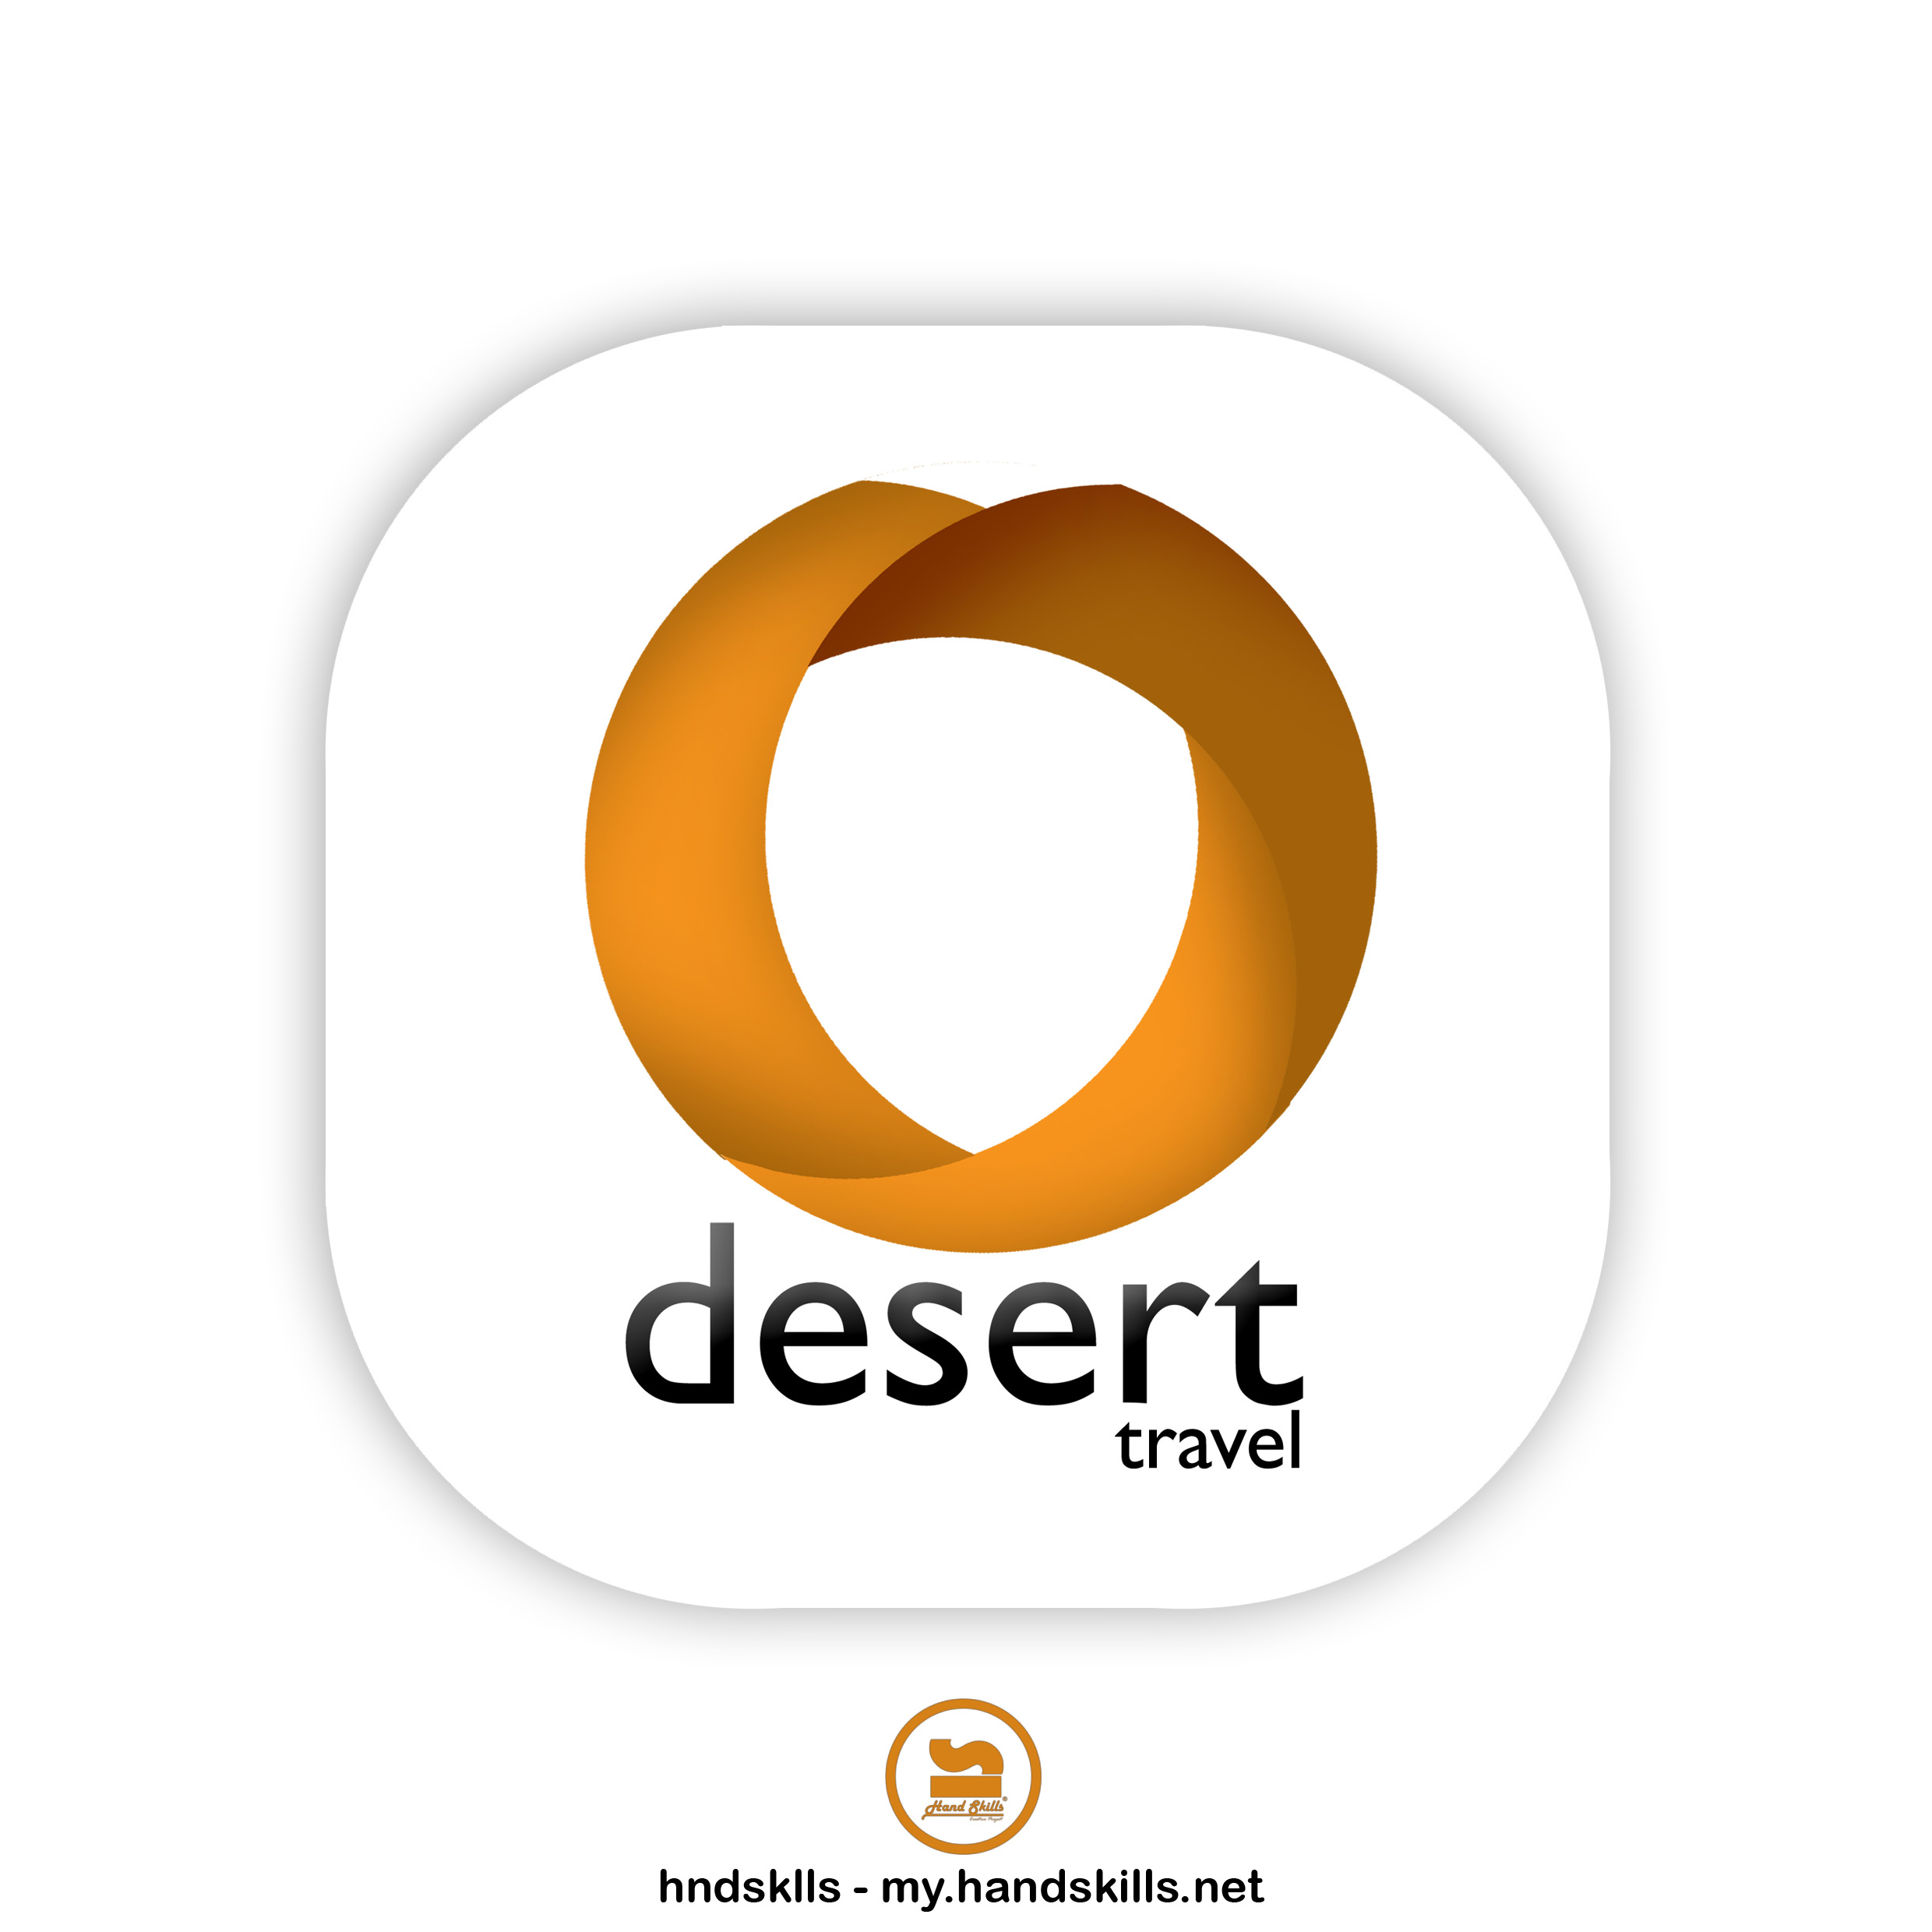 Desert Travel Logo Design by HandSkills Leading Design Future